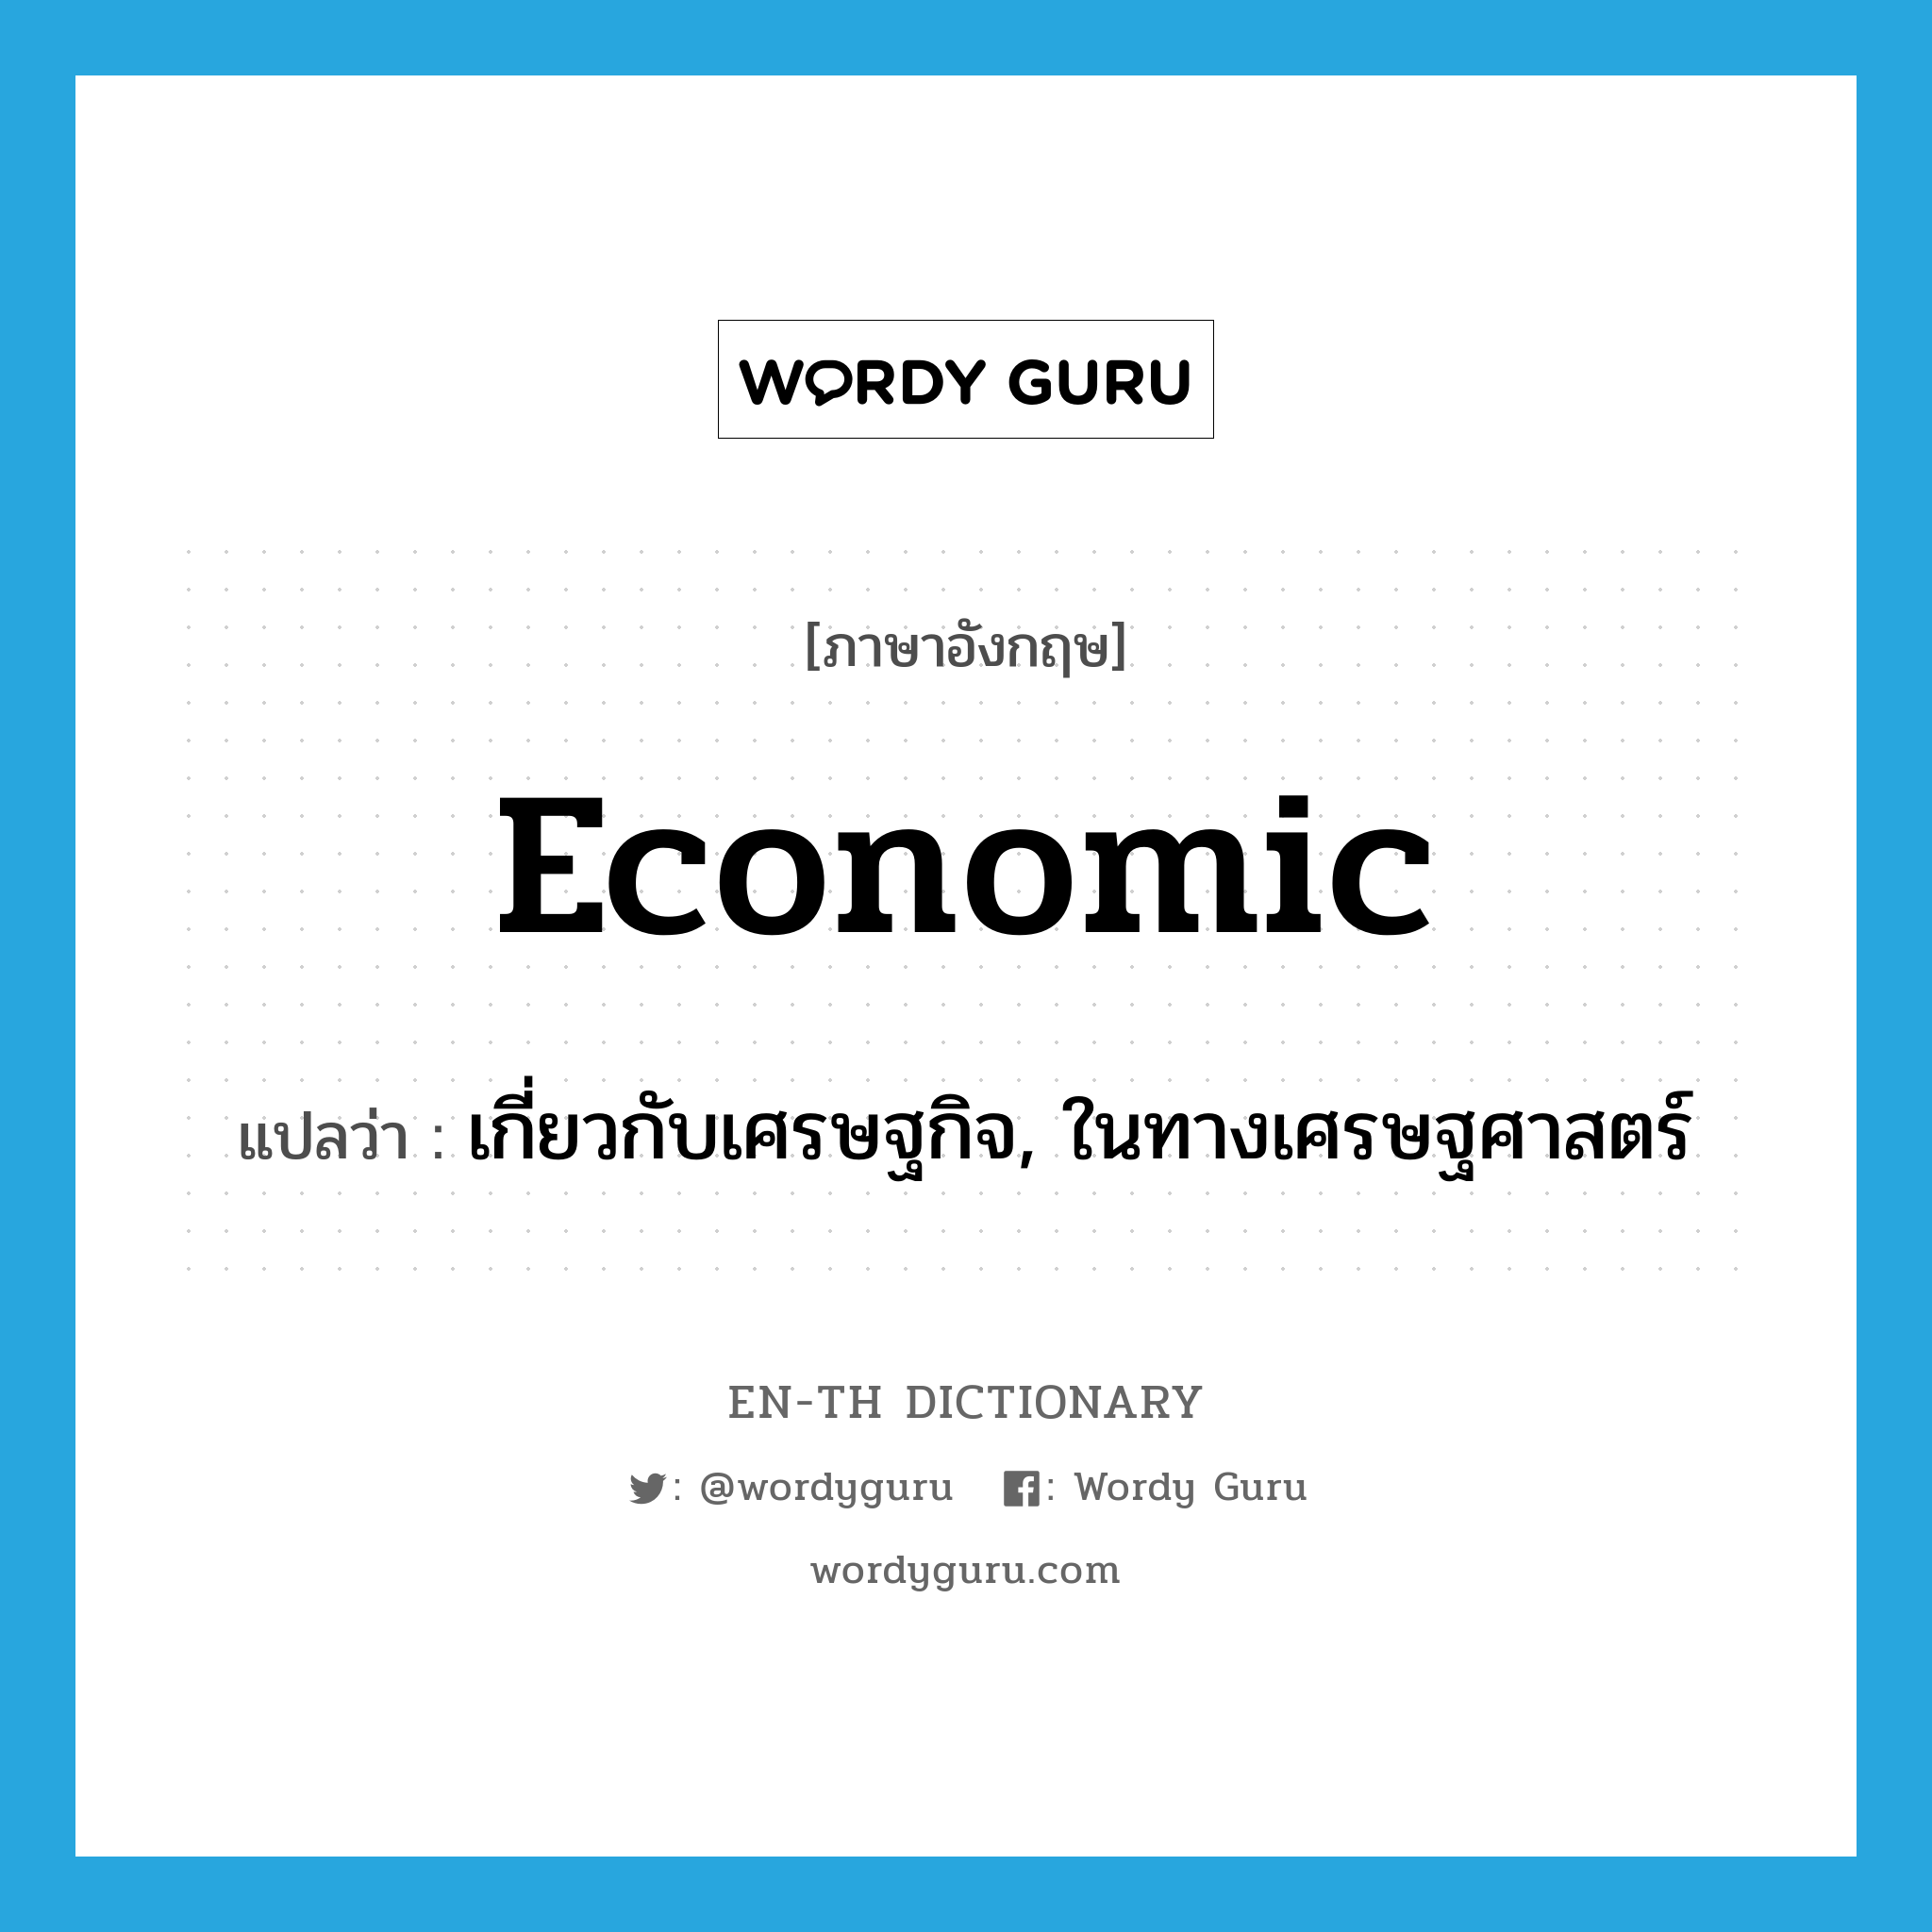 เกี่ยวกับเศรษฐกิจ, ในทางเศรษฐศาสตร์ ภาษาอังกฤษ?, คำศัพท์ภาษาอังกฤษ เกี่ยวกับเศรษฐกิจ, ในทางเศรษฐศาสตร์ แปลว่า economic ประเภท ADJ หมวด ADJ